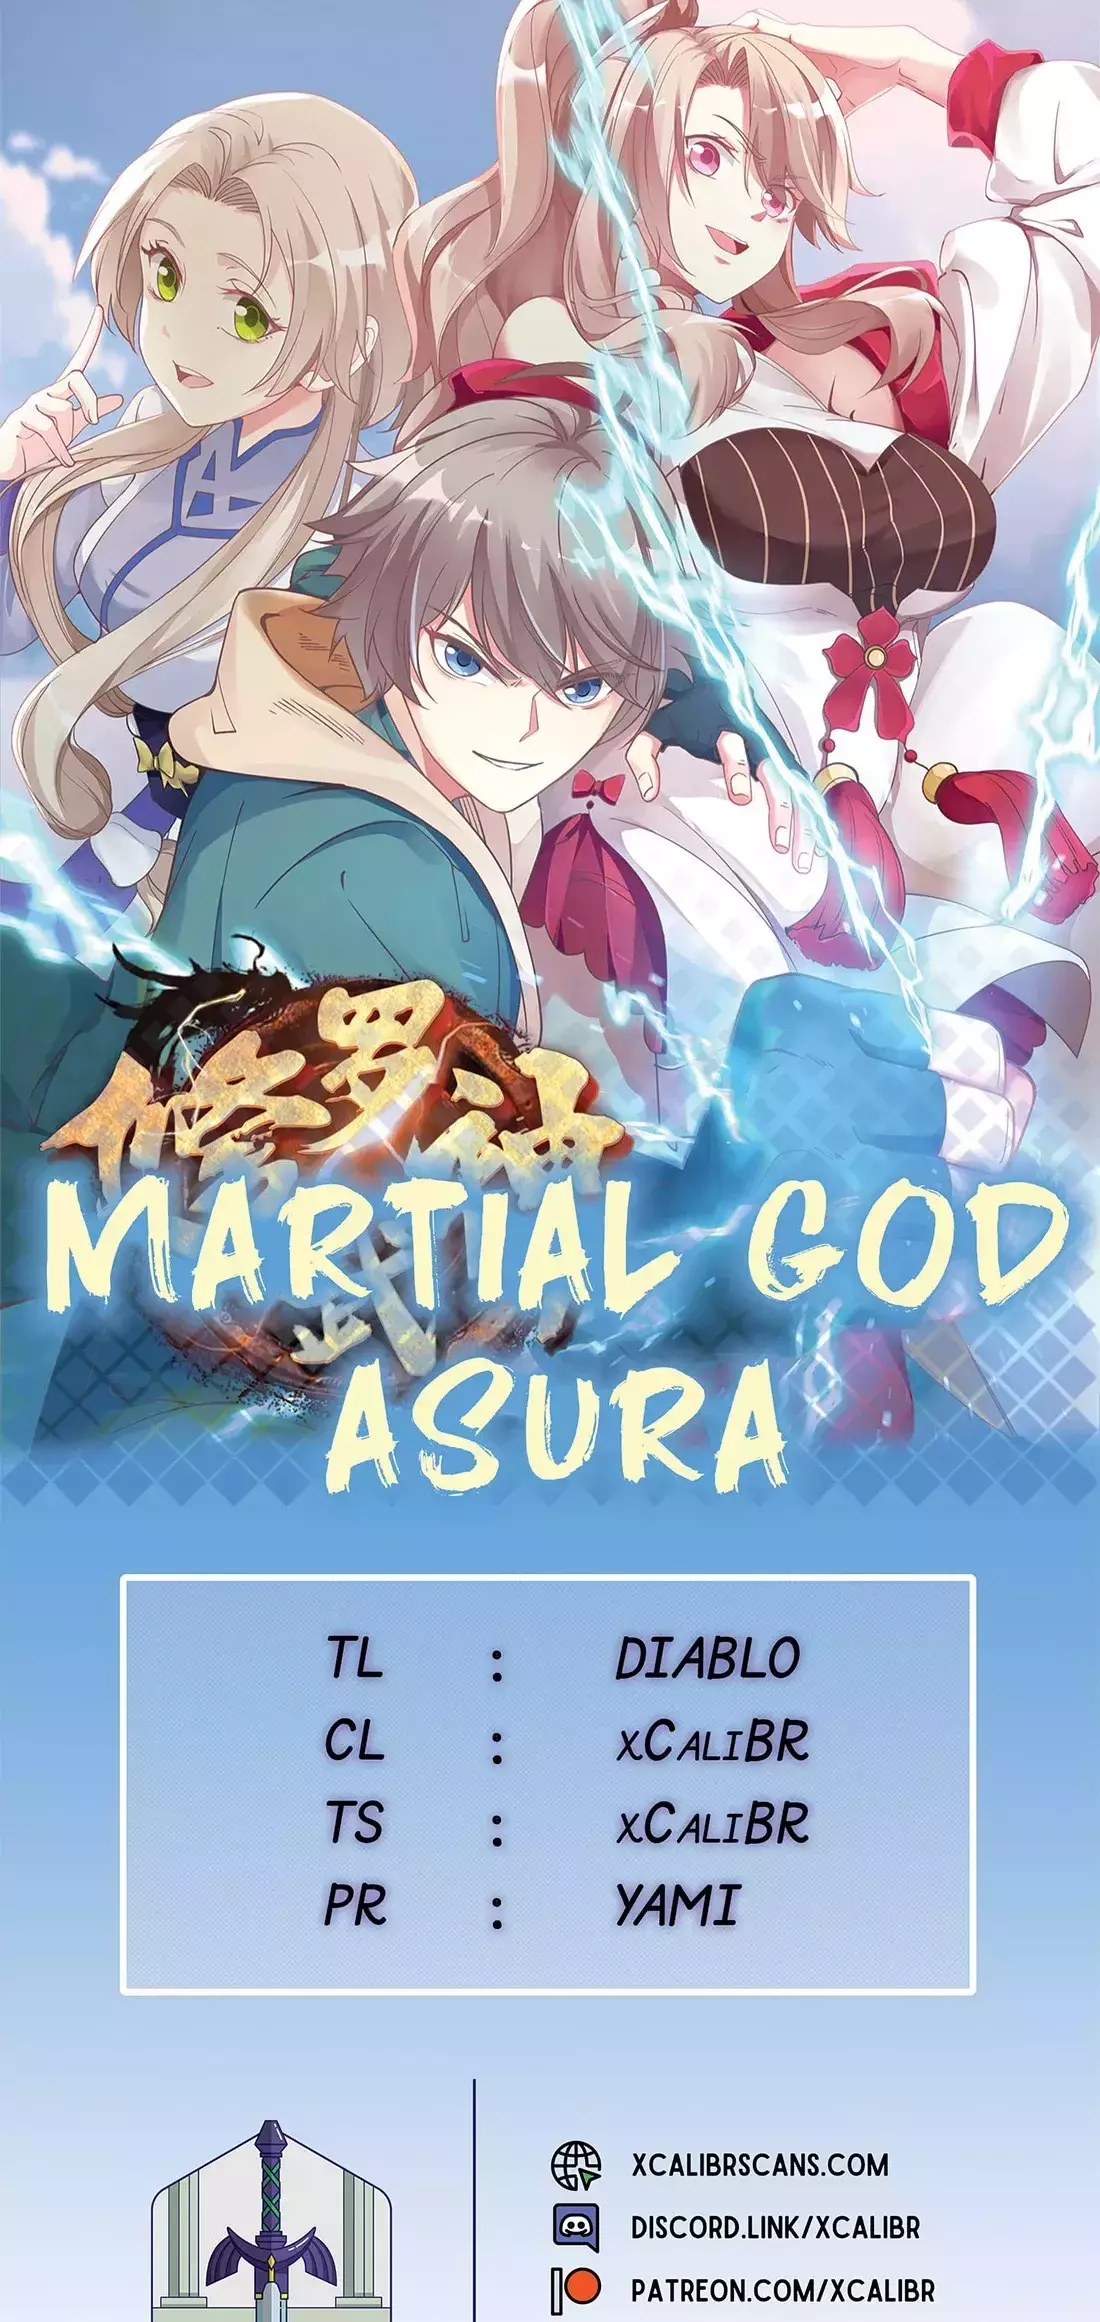 Martial God Asura - 590 page 1-59d71d75